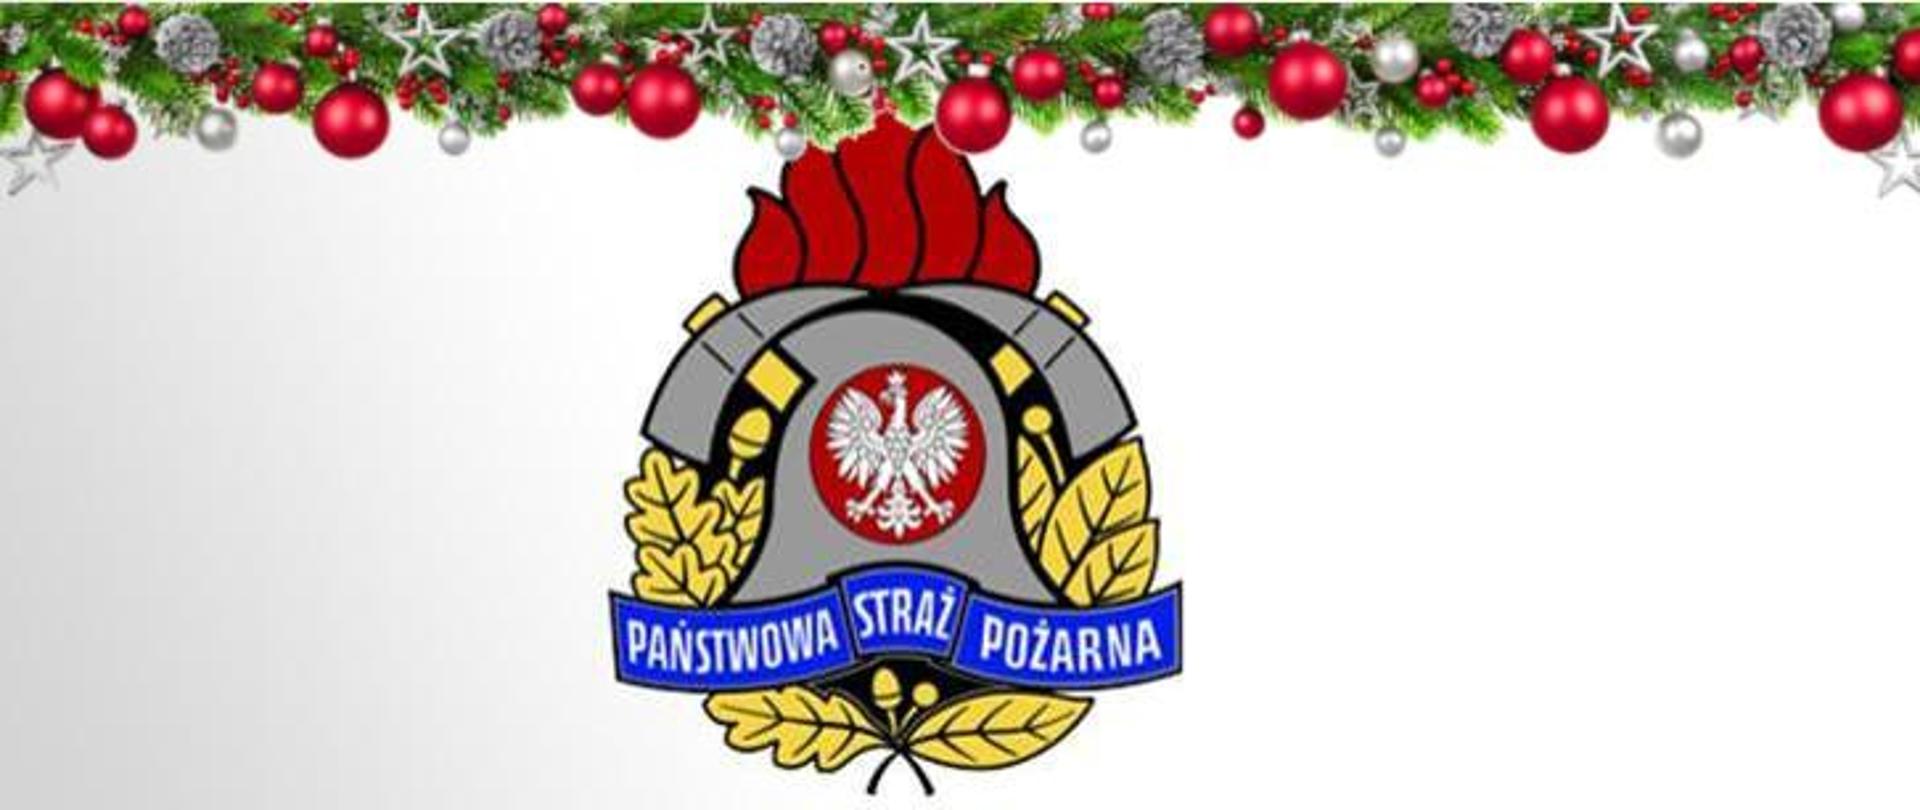 Logo PSP z dodatkiem świątecznym. Utworzone na potrzeby publikacji życzeń świątecznych z okazji świąt bożego narodzenia